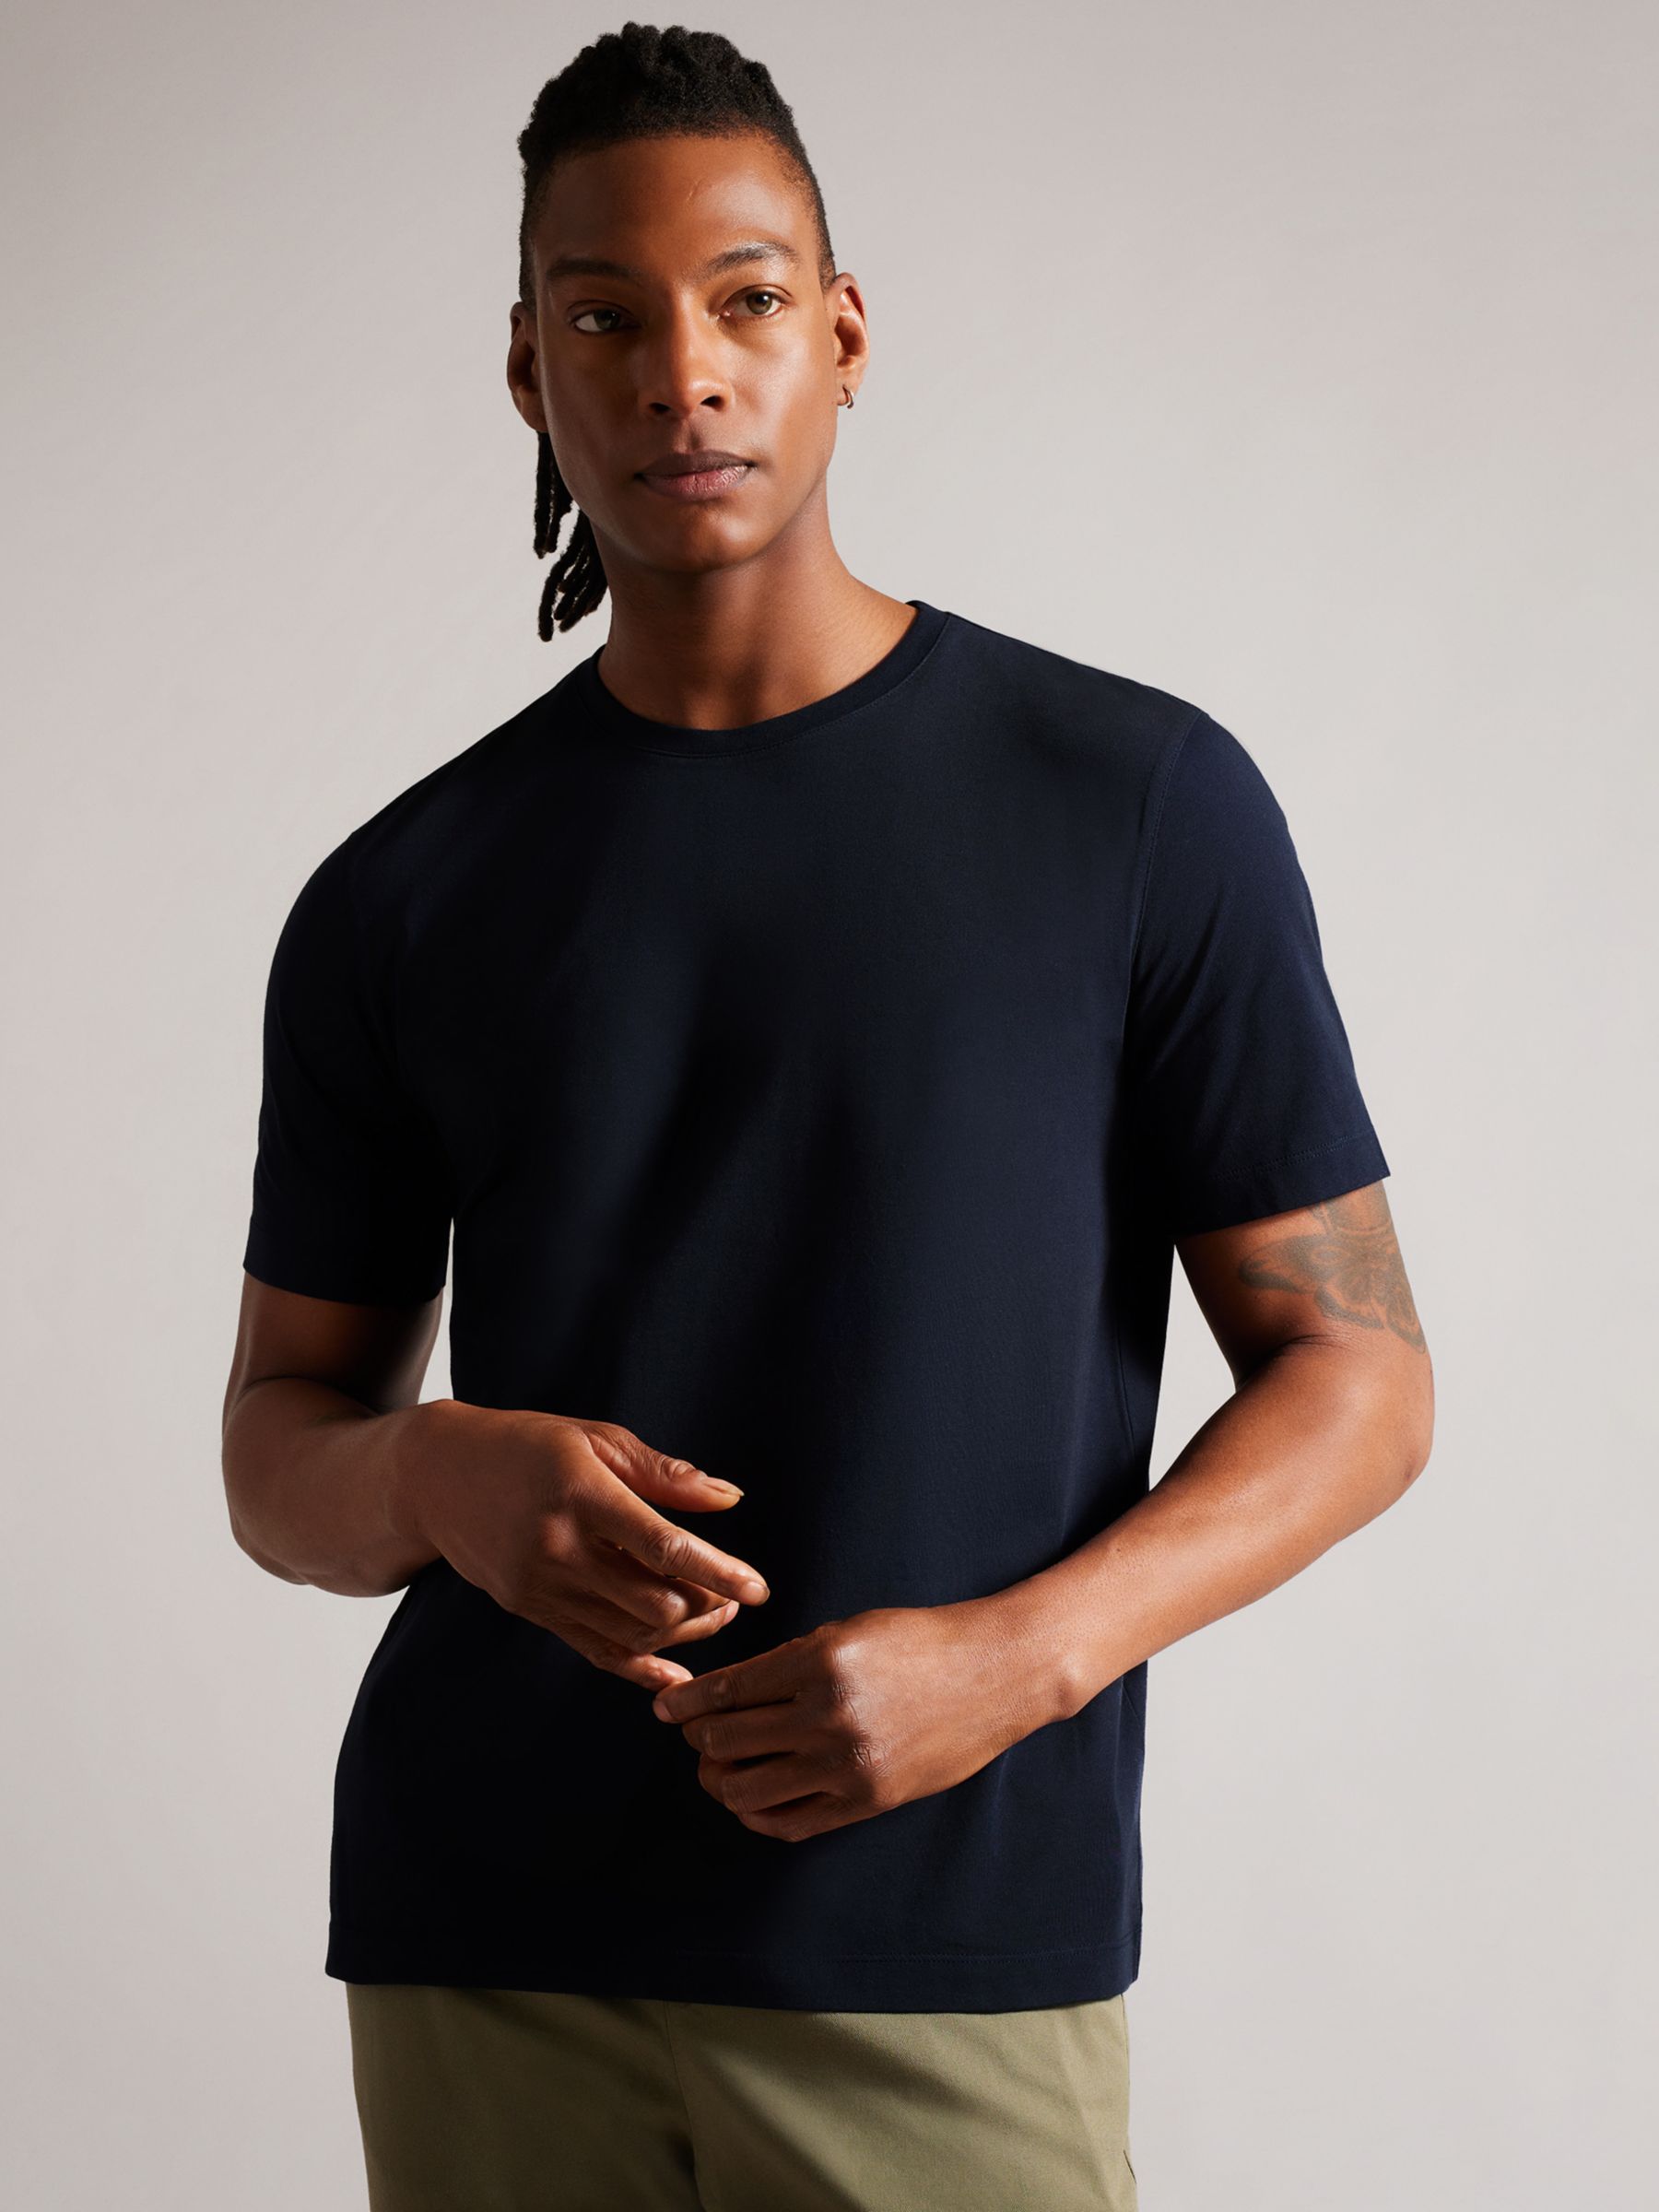 Ted Baker Tywinn Cotton T-Shirt, Blue Navy, XS